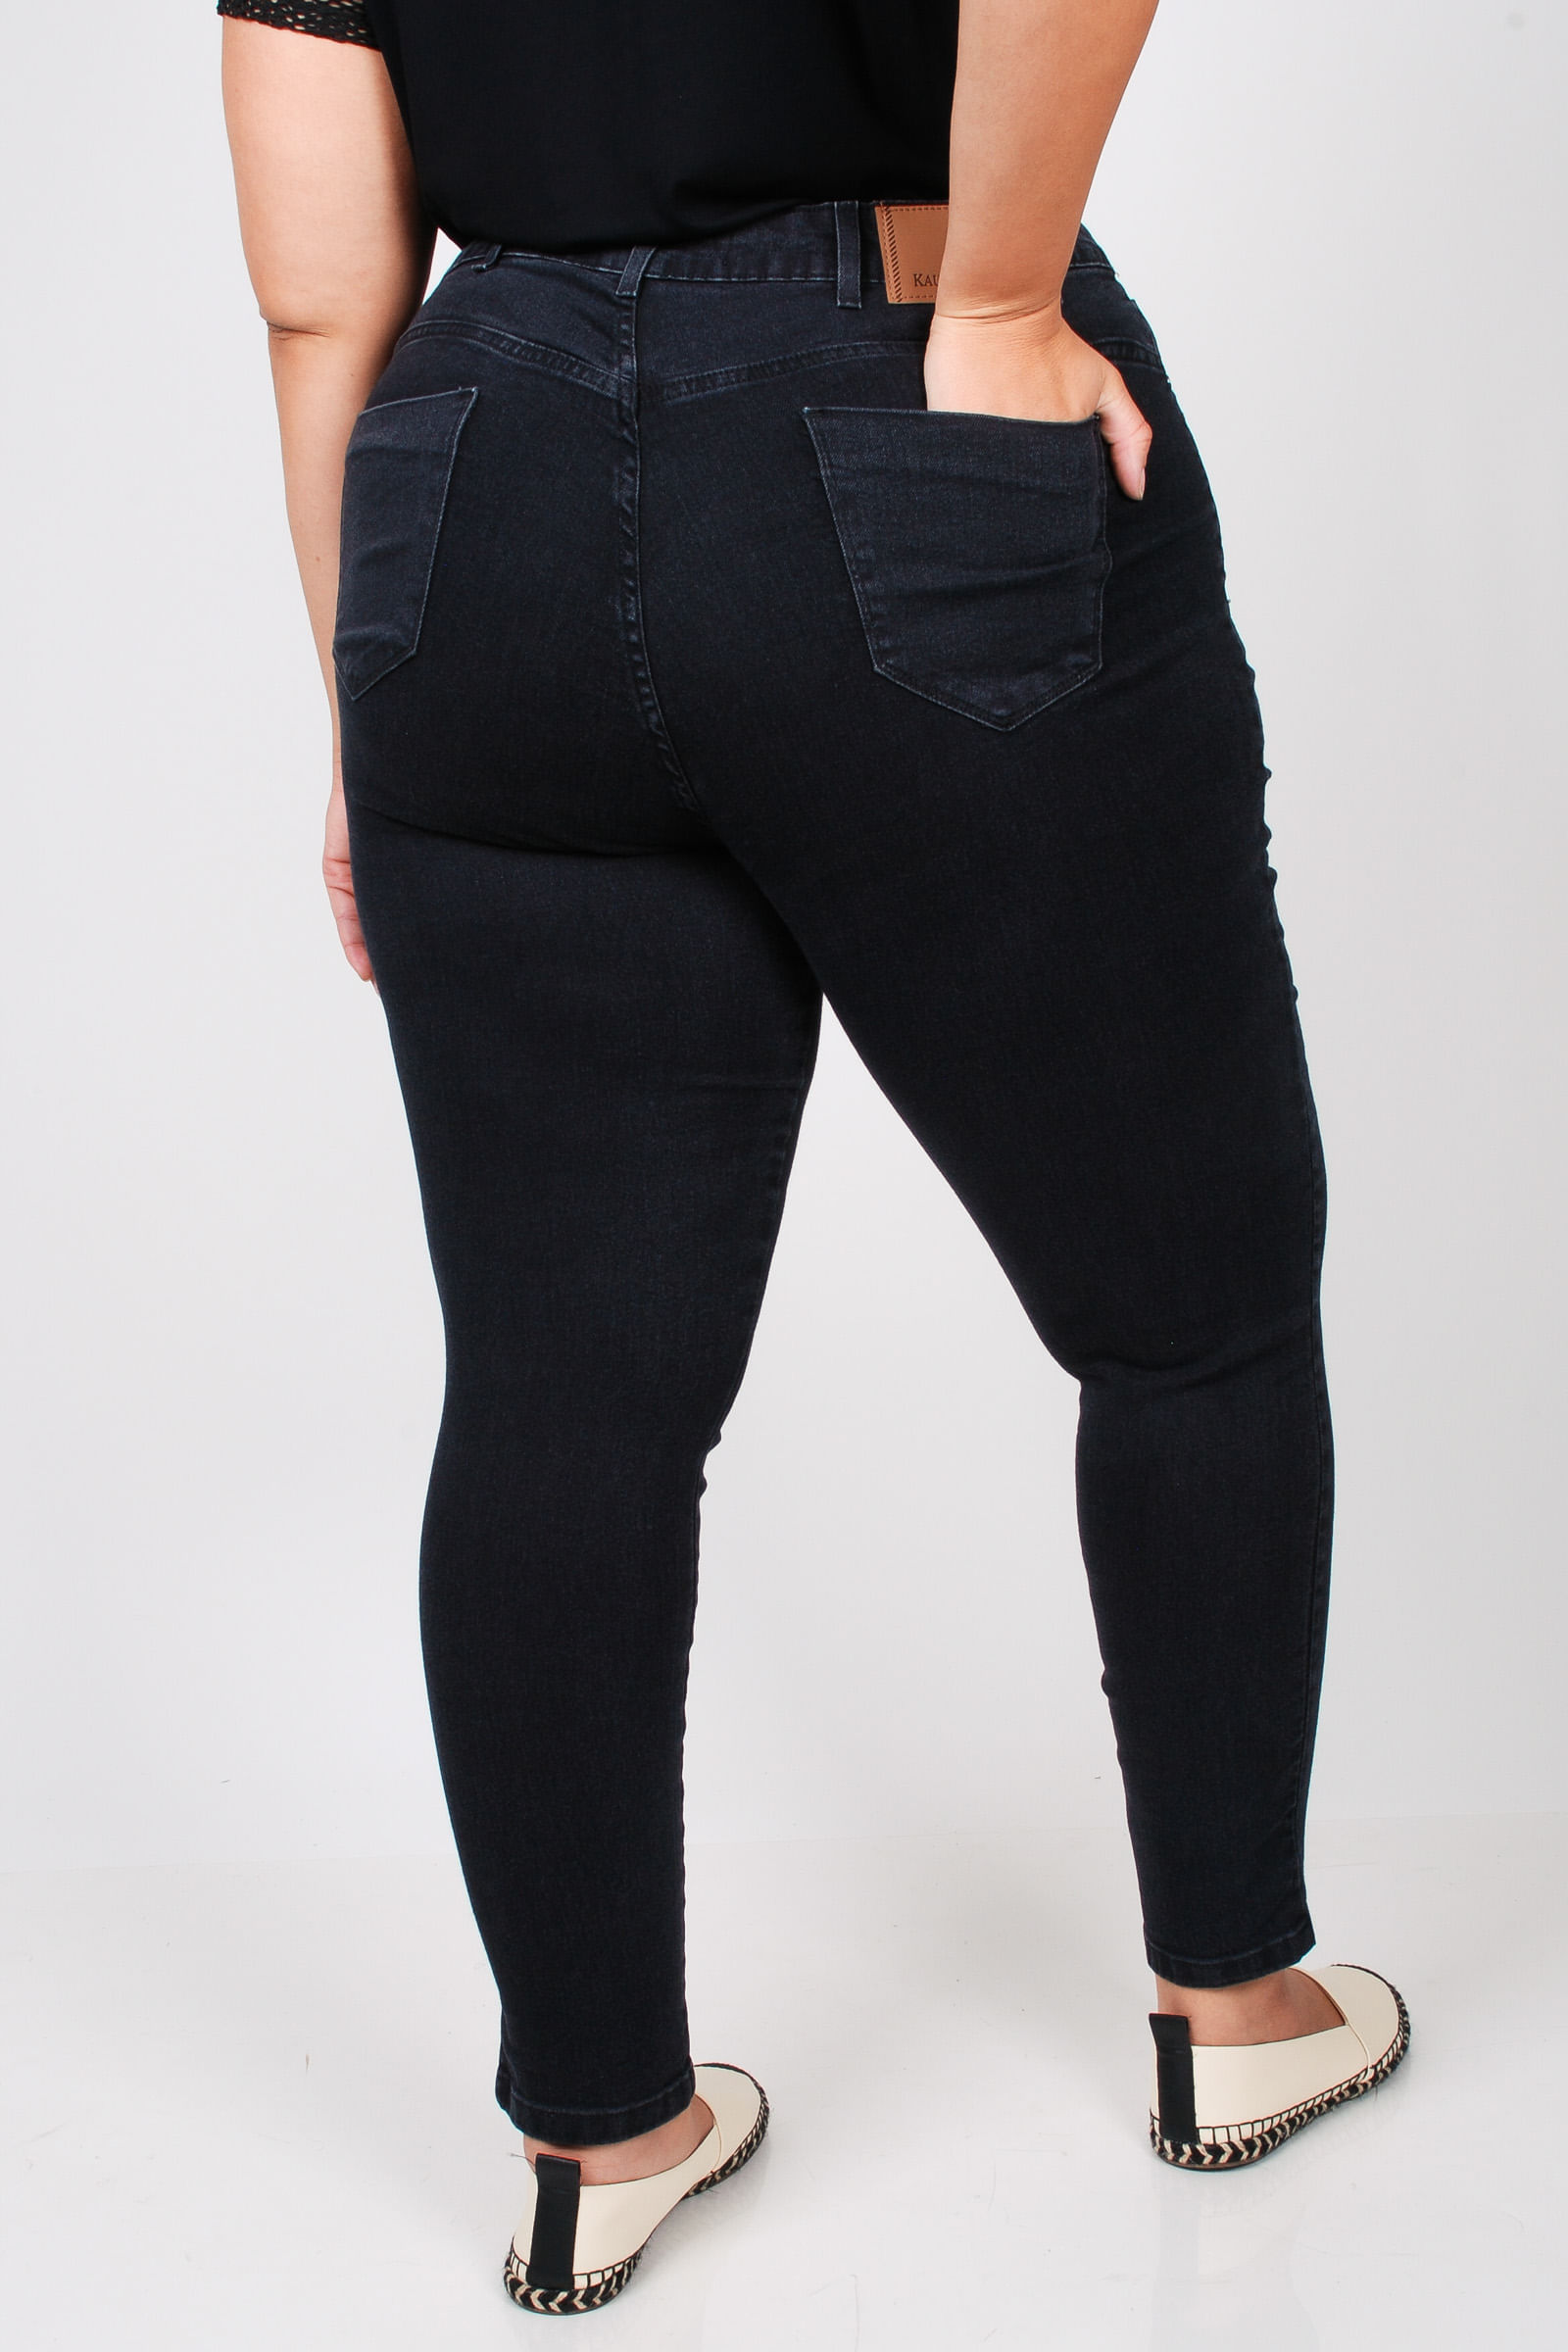 Calca-skinny-black-jeans-plus-size_0103_4